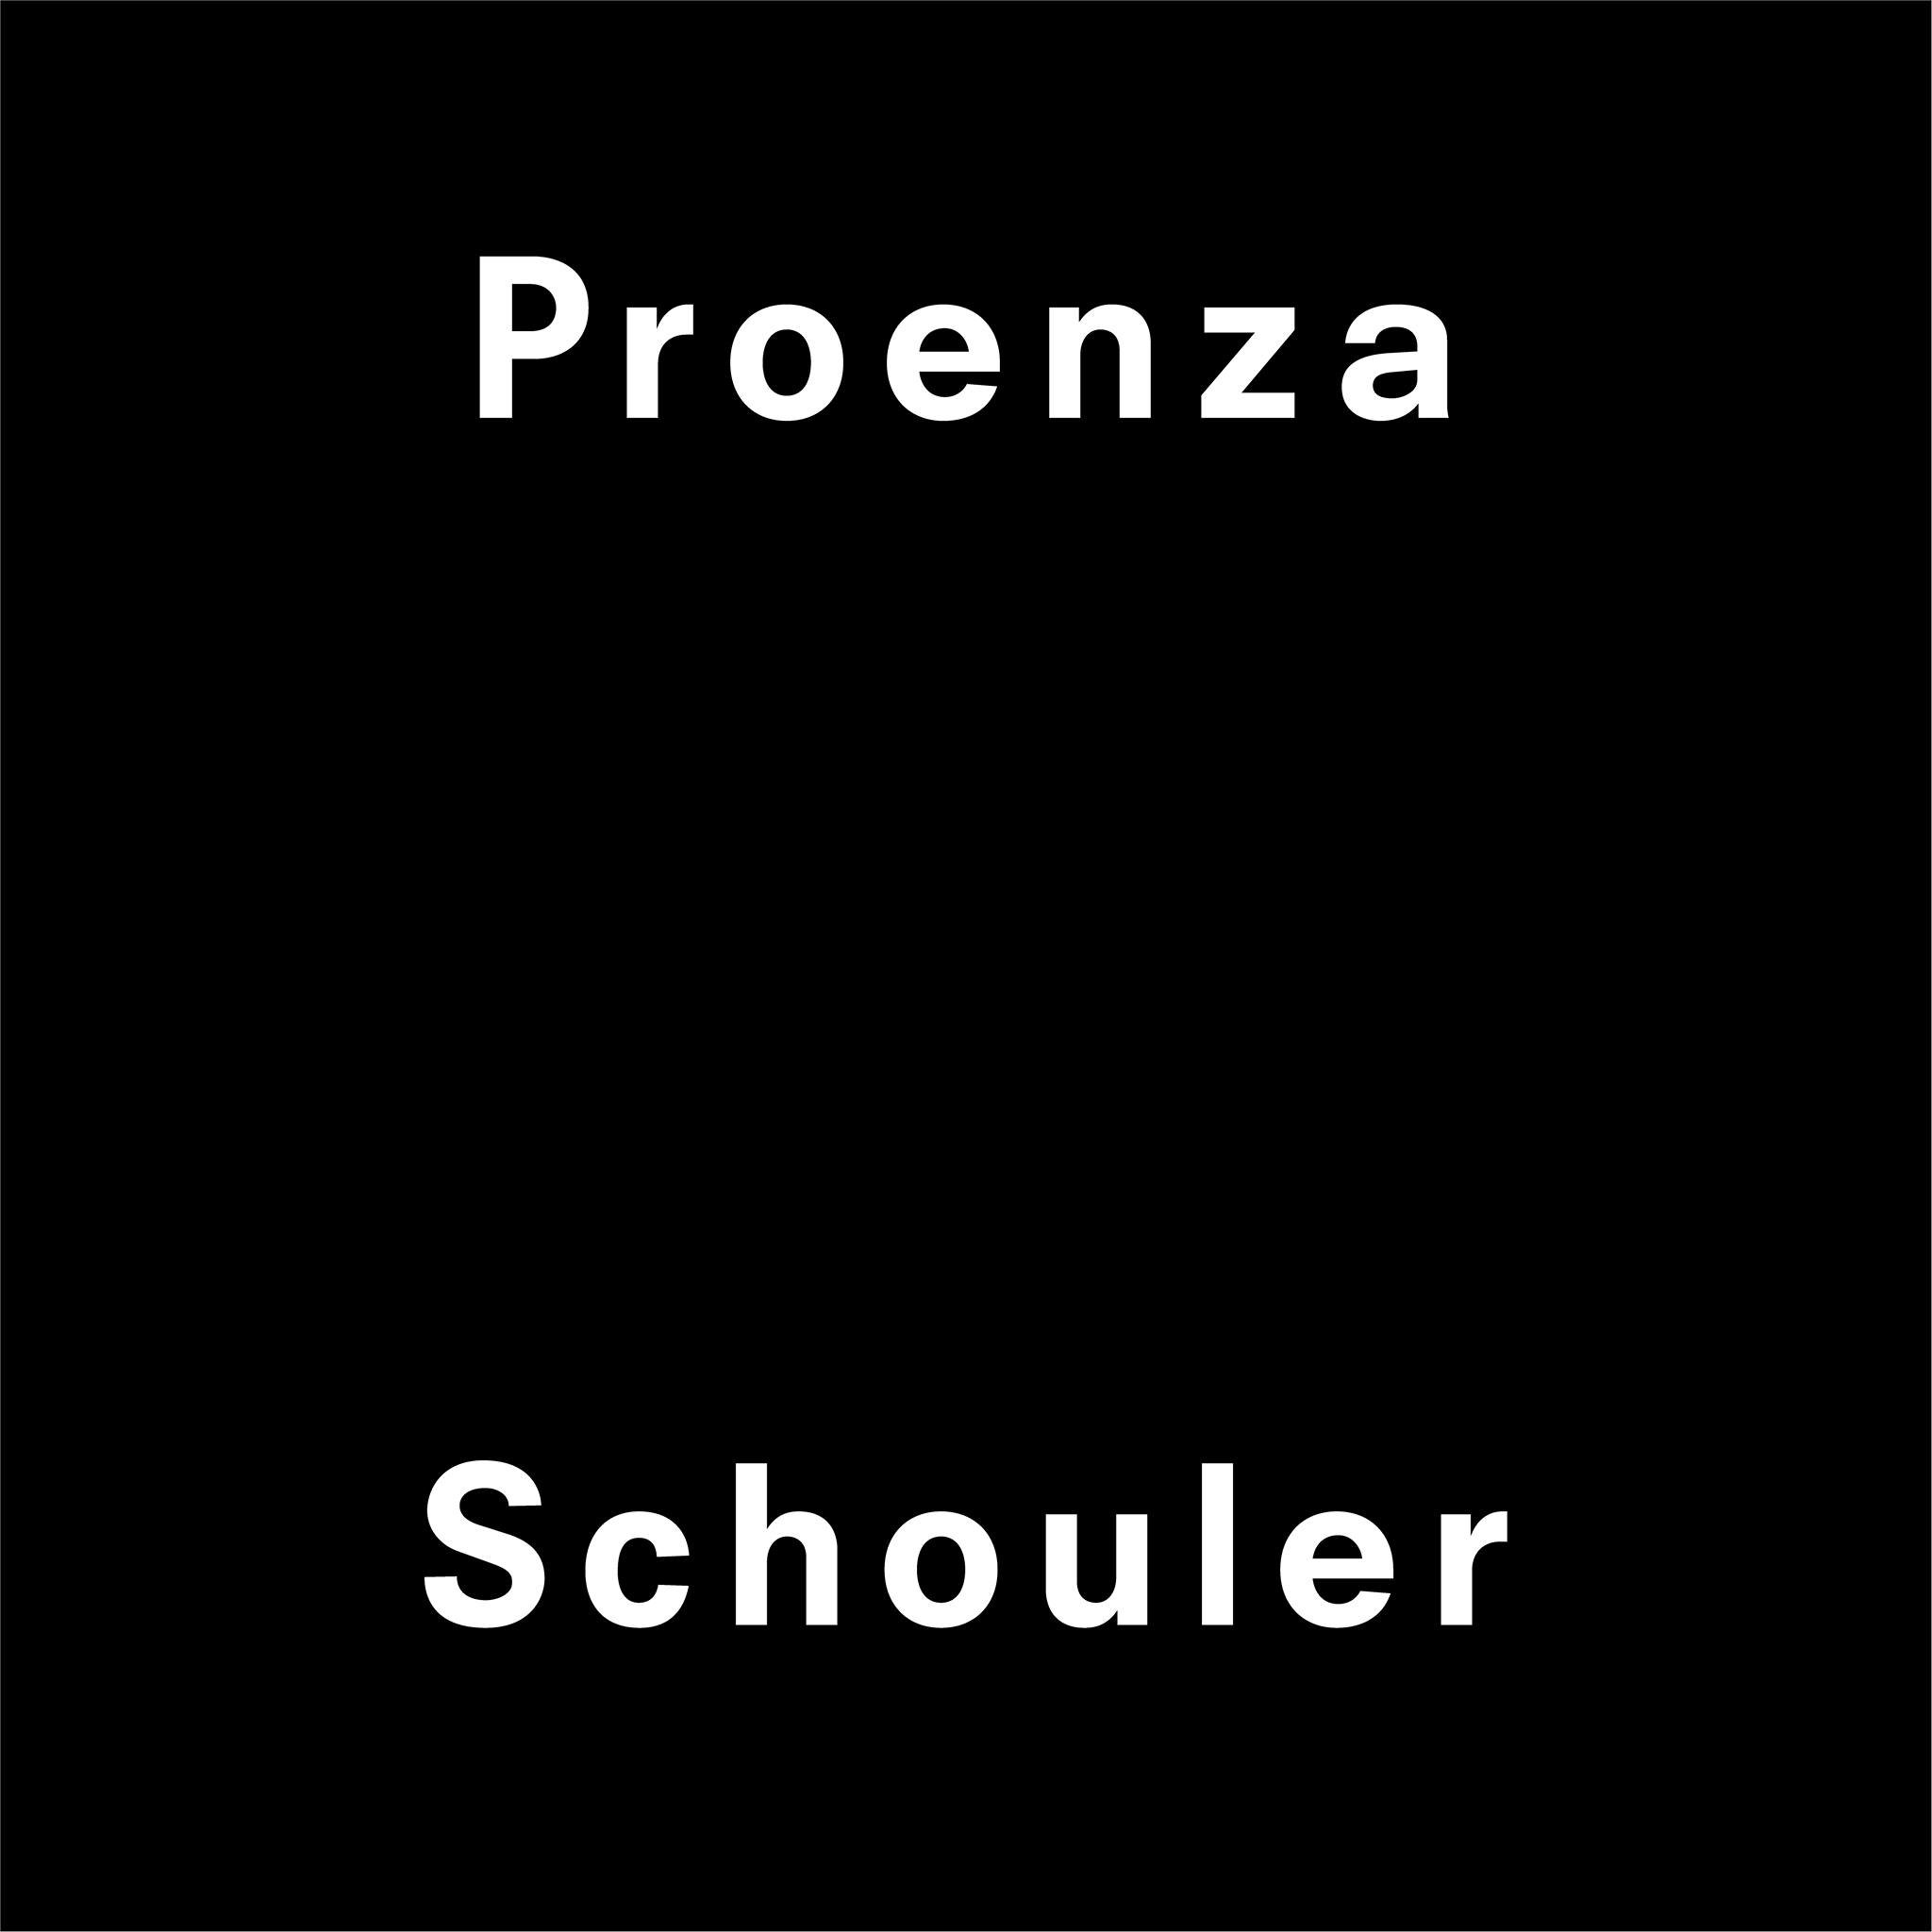 Proenza Schouler - fashionabc